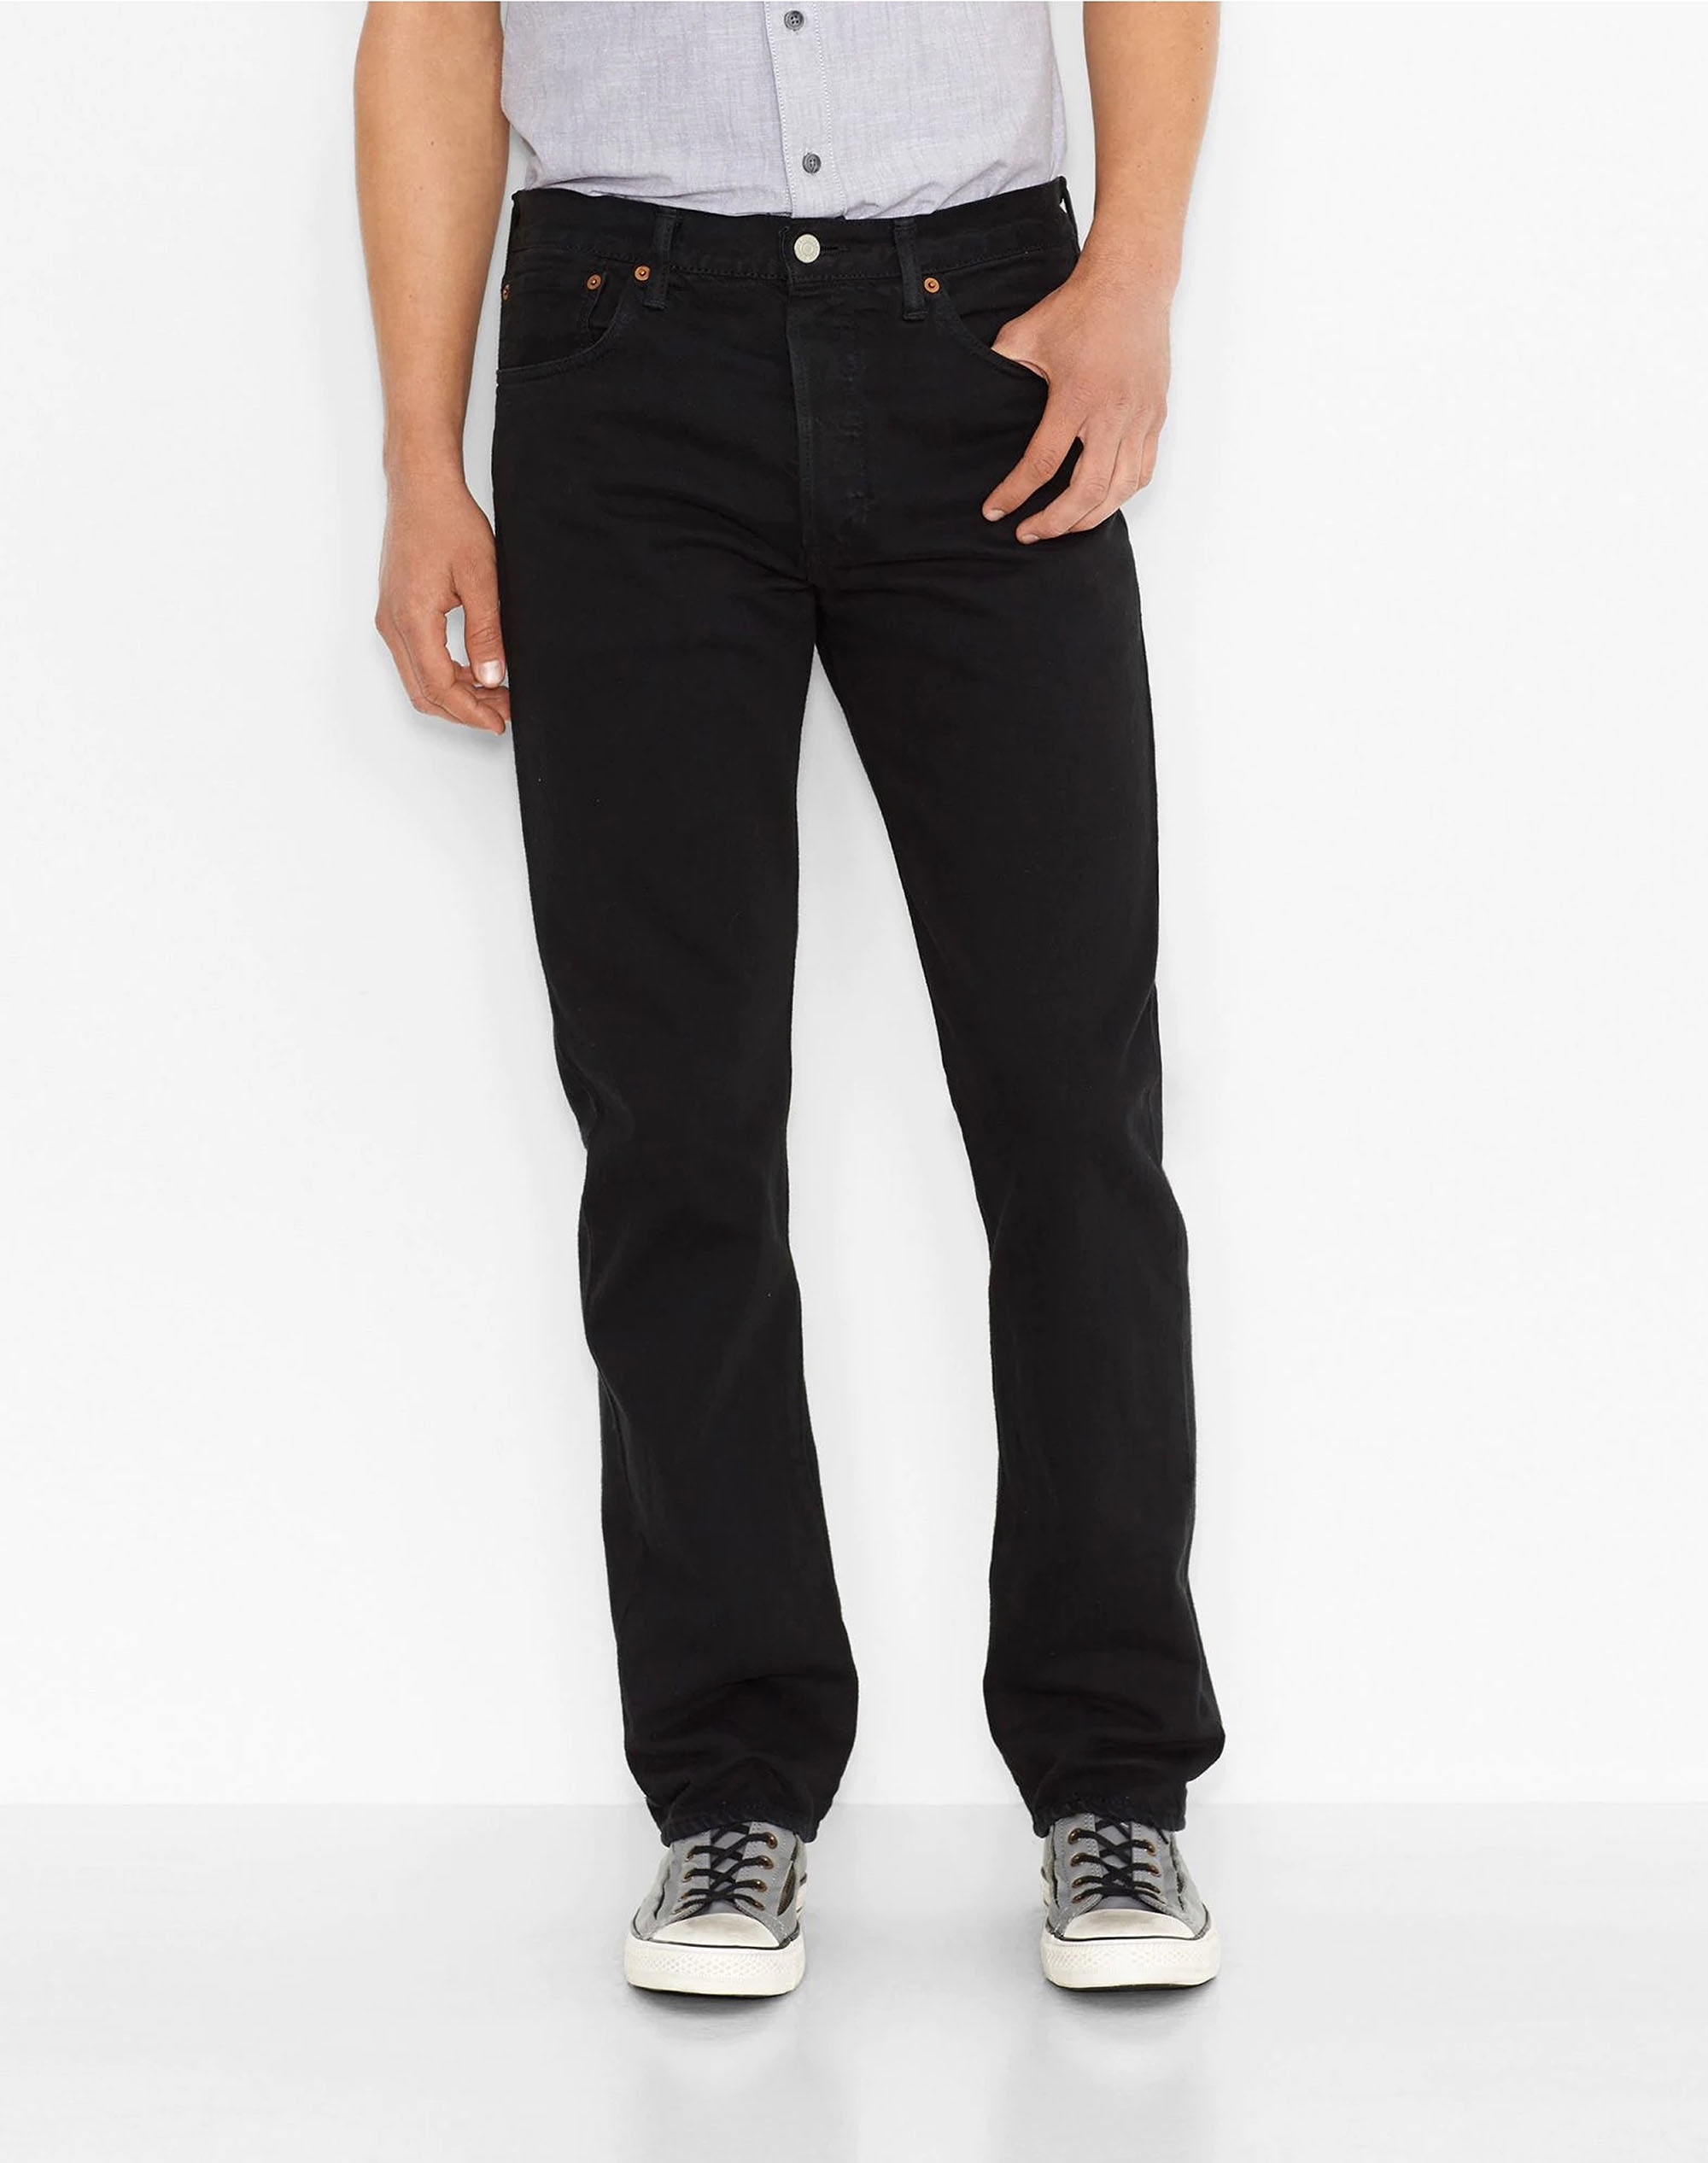 Levi's® 501® regular pantalones vaqueros de hombre 00501-0165 negro